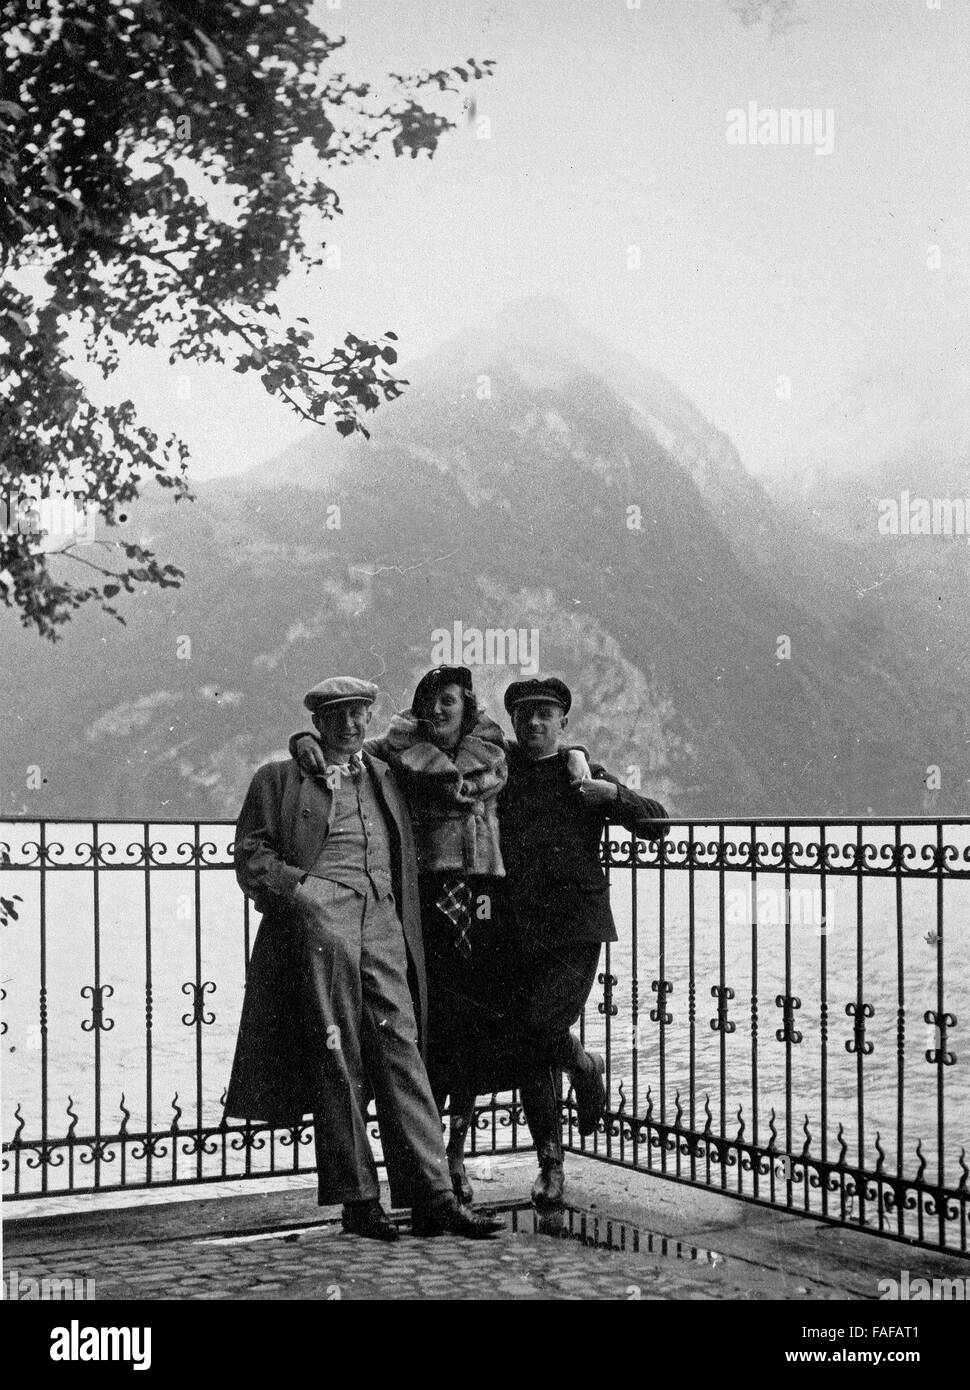 Touristen auf der Tellsplatte am Vierwaldstättersee im Kanton Uri, Schweiz 1930er Jahre. Tourists at Tell's platform on Lake Lucerne in Uri canton, Switzerland 1930s. Stock Photo